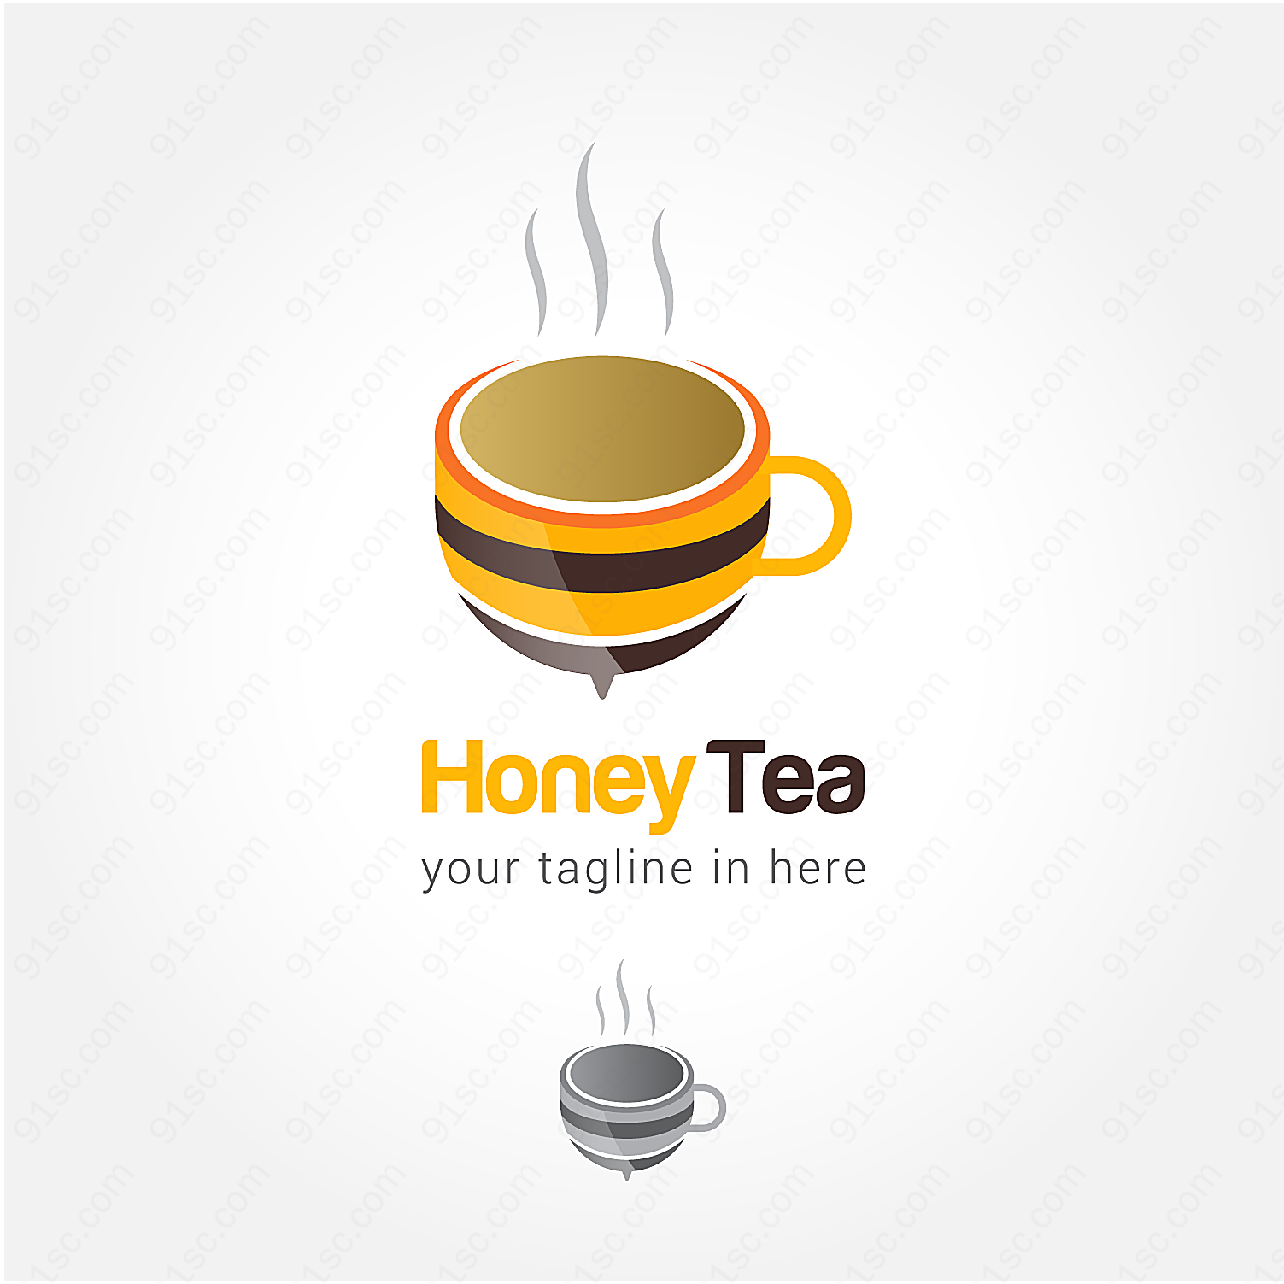 蜂蜜茶等主题标志矢量logo图形